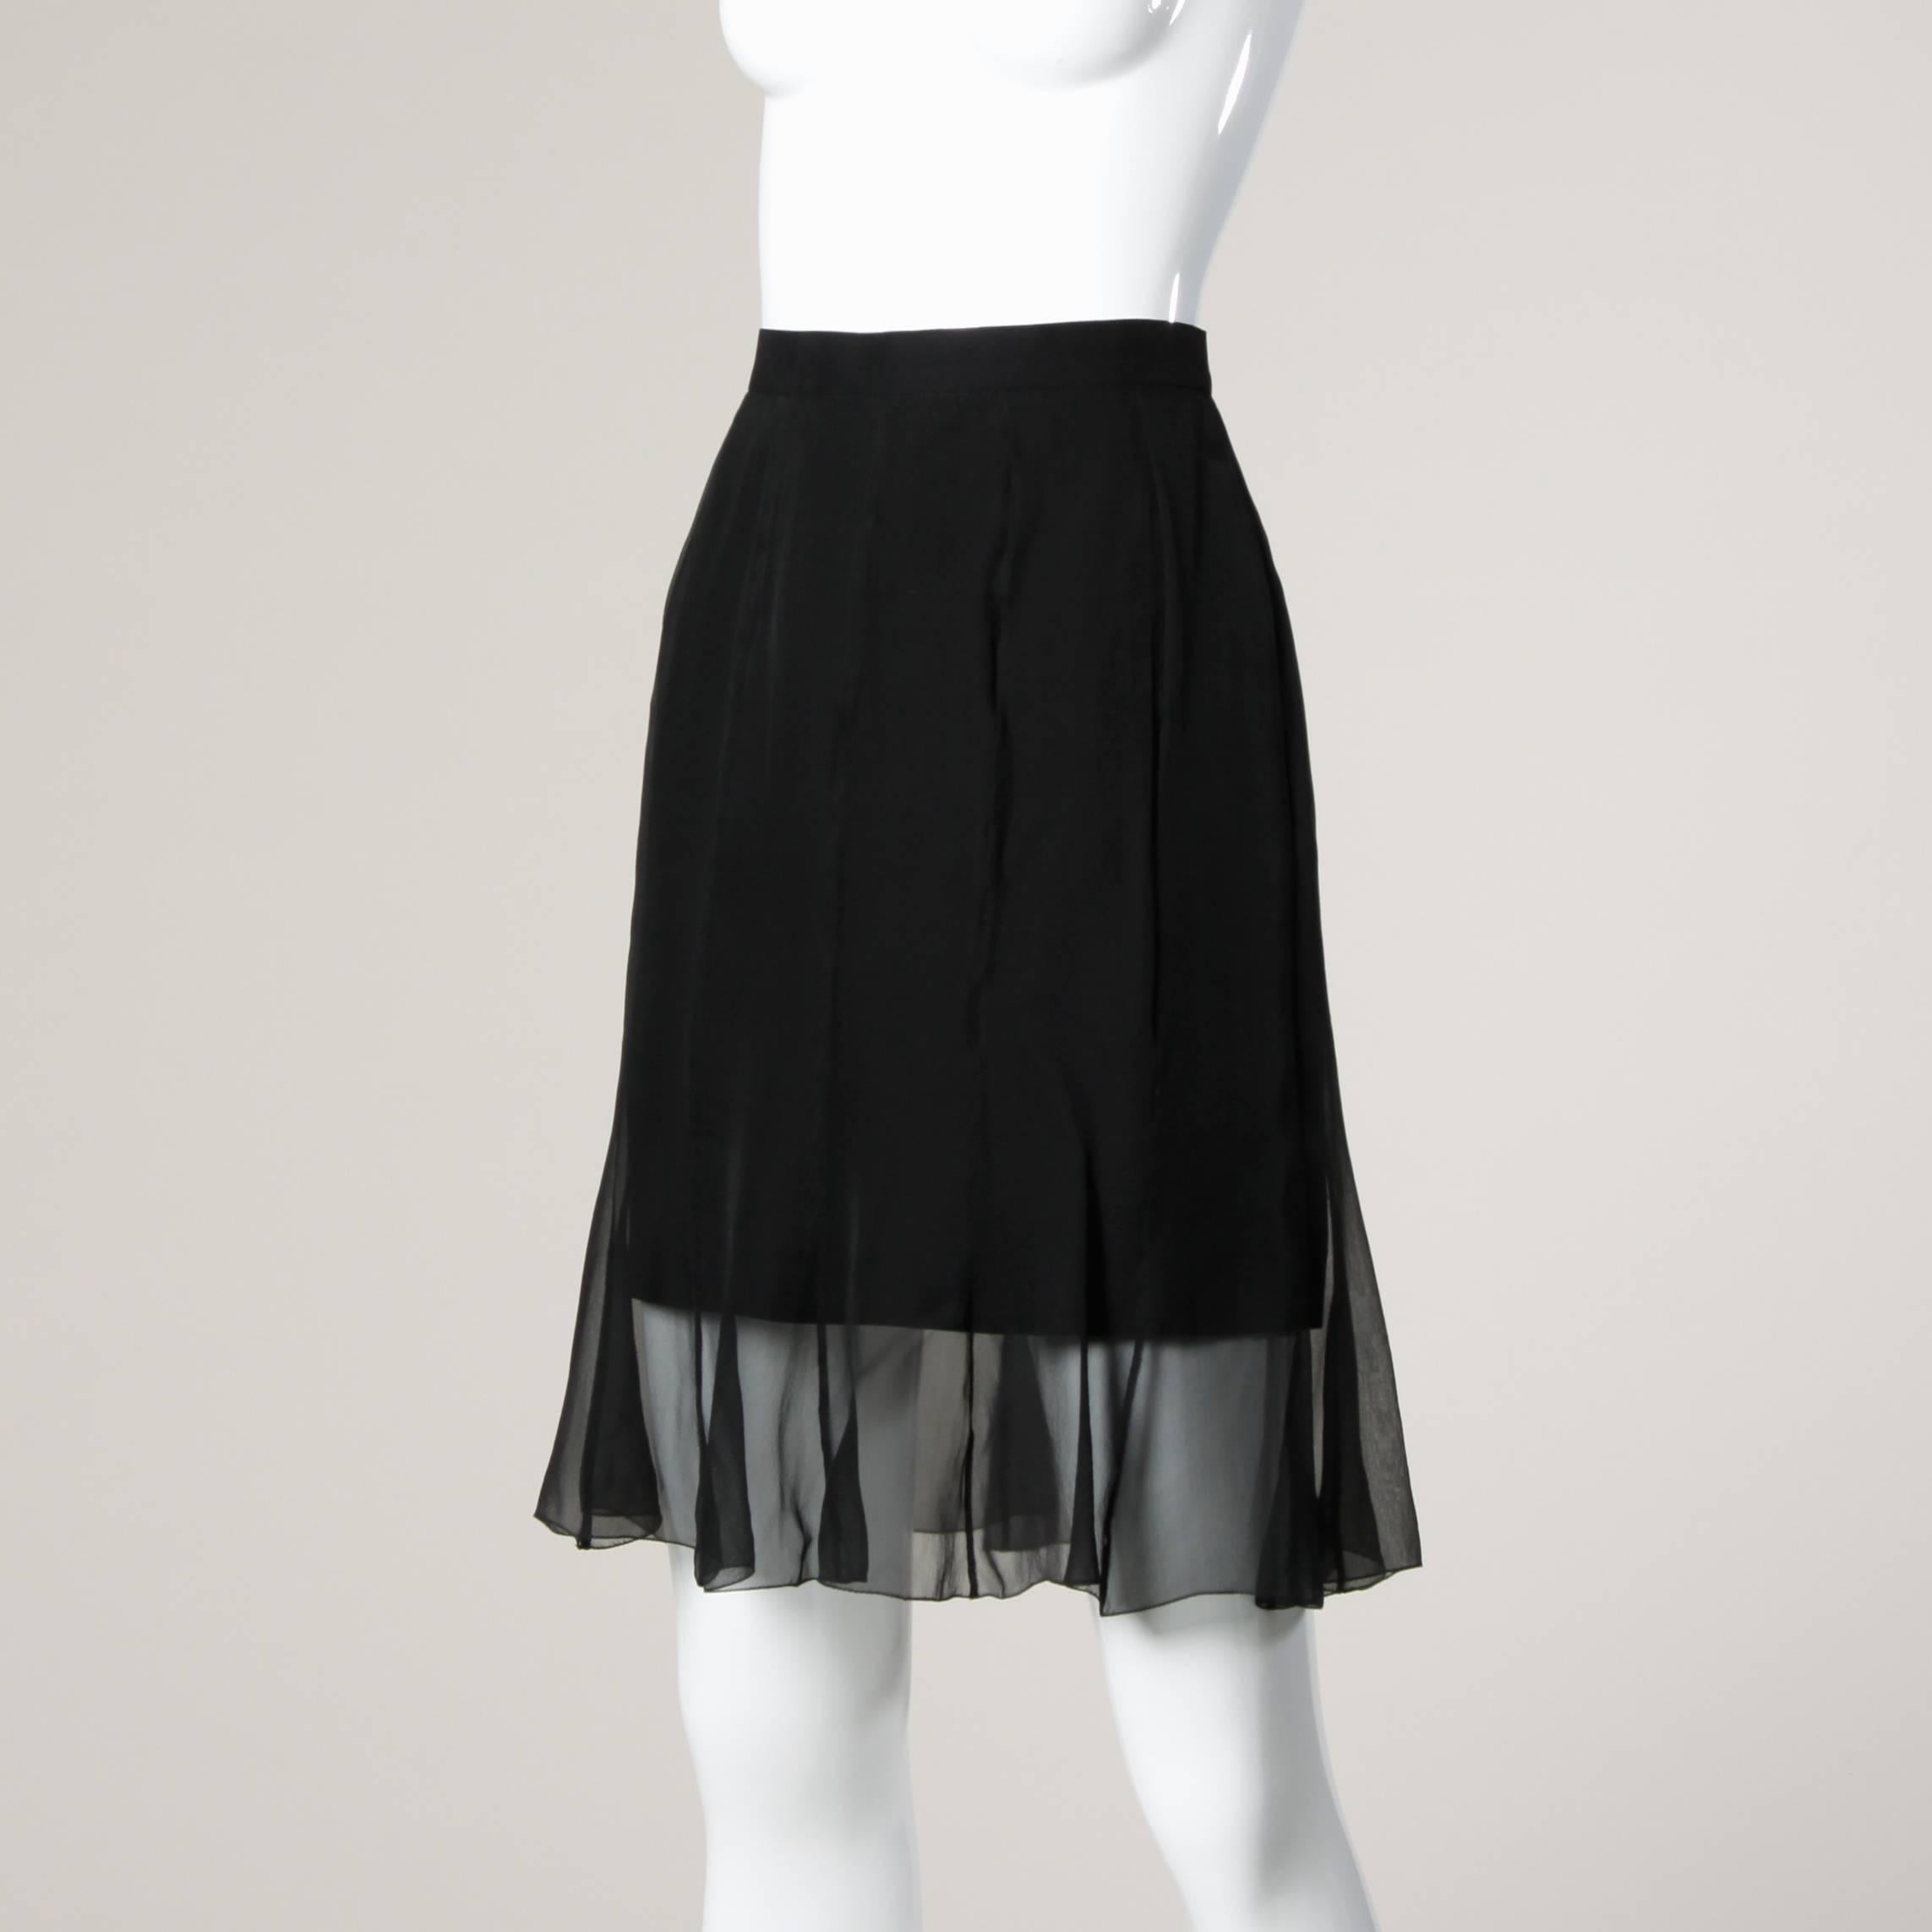 sheer black skirt